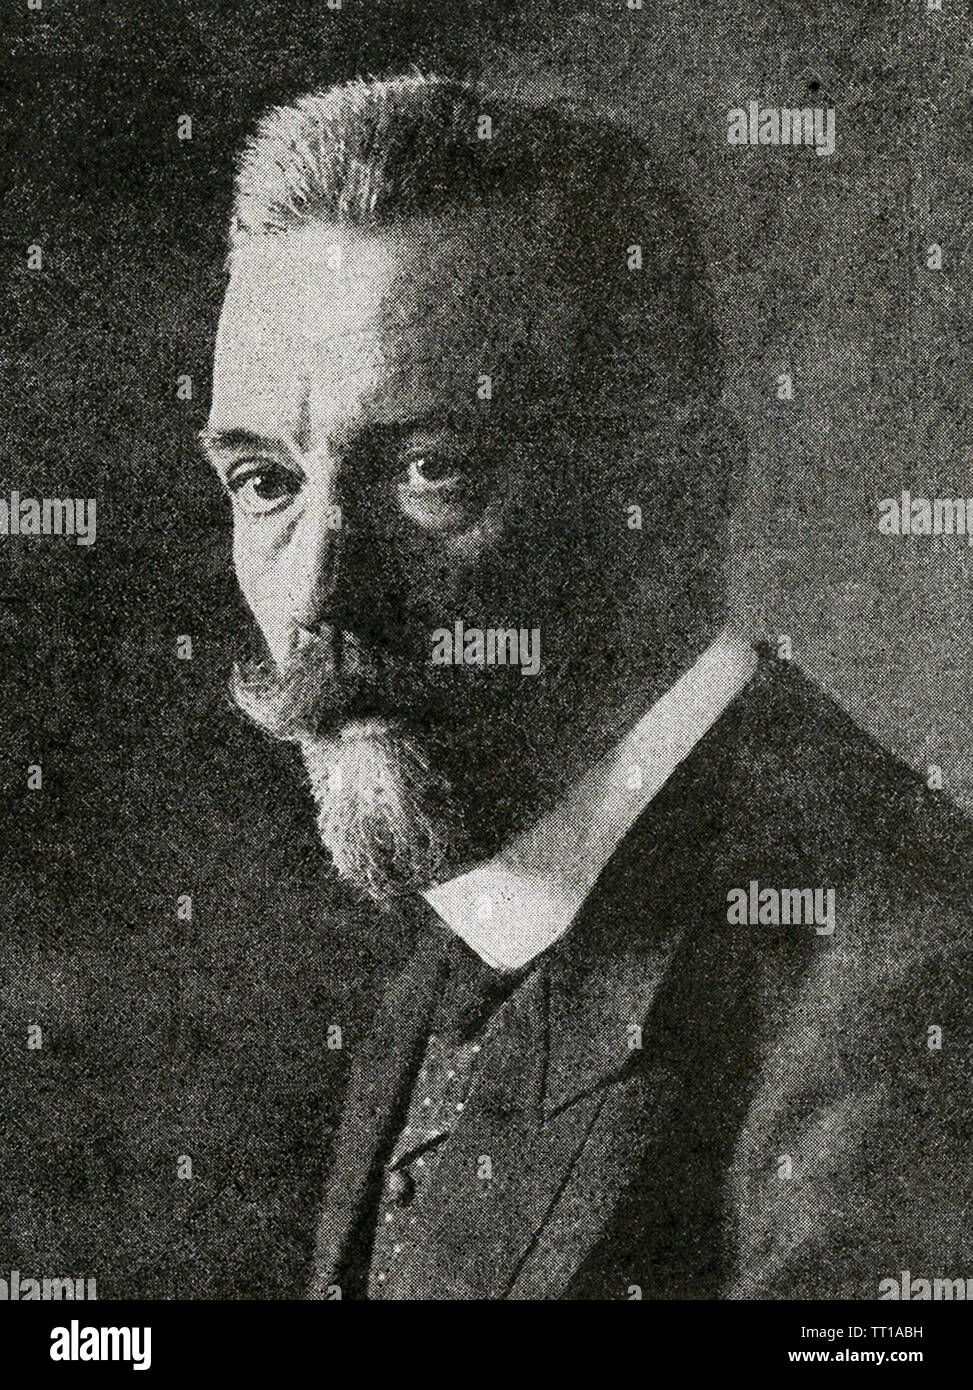 La photo date de la Première Guerre mondiale. Le sous-titre suivant : Bethman Hollweg, les faibles d'esprit membre du conseil de guerre Ex-Kaiser. Banque D'Images